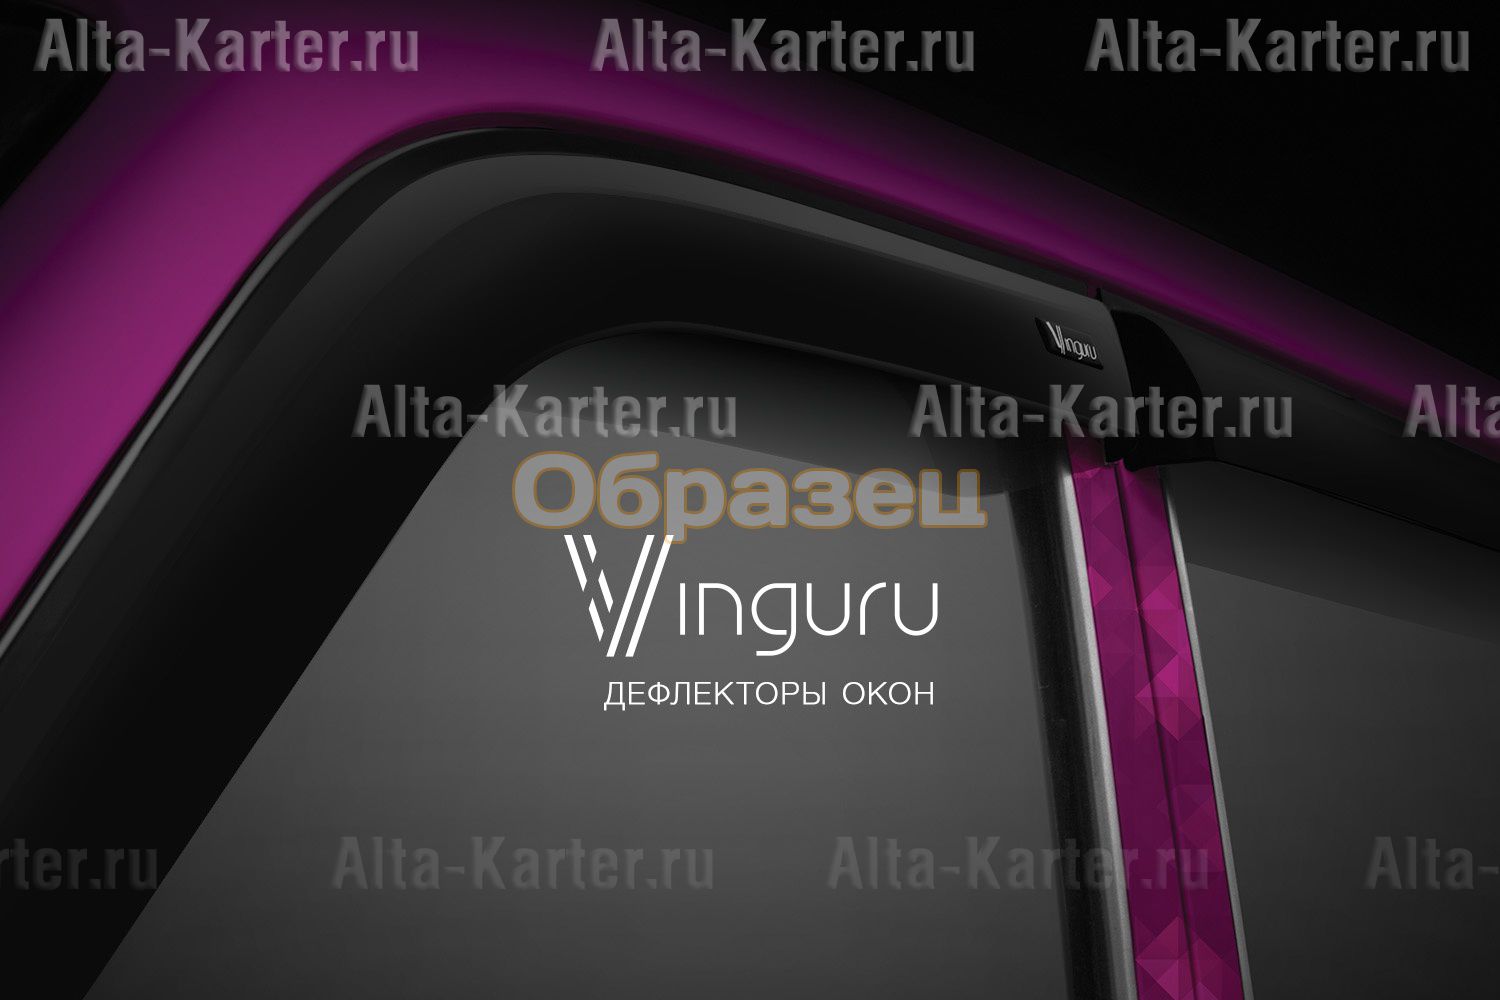 Дефлекторы Vinguru для окон Lada Kalina II универсал 2013-2018. Артикул AFV219413